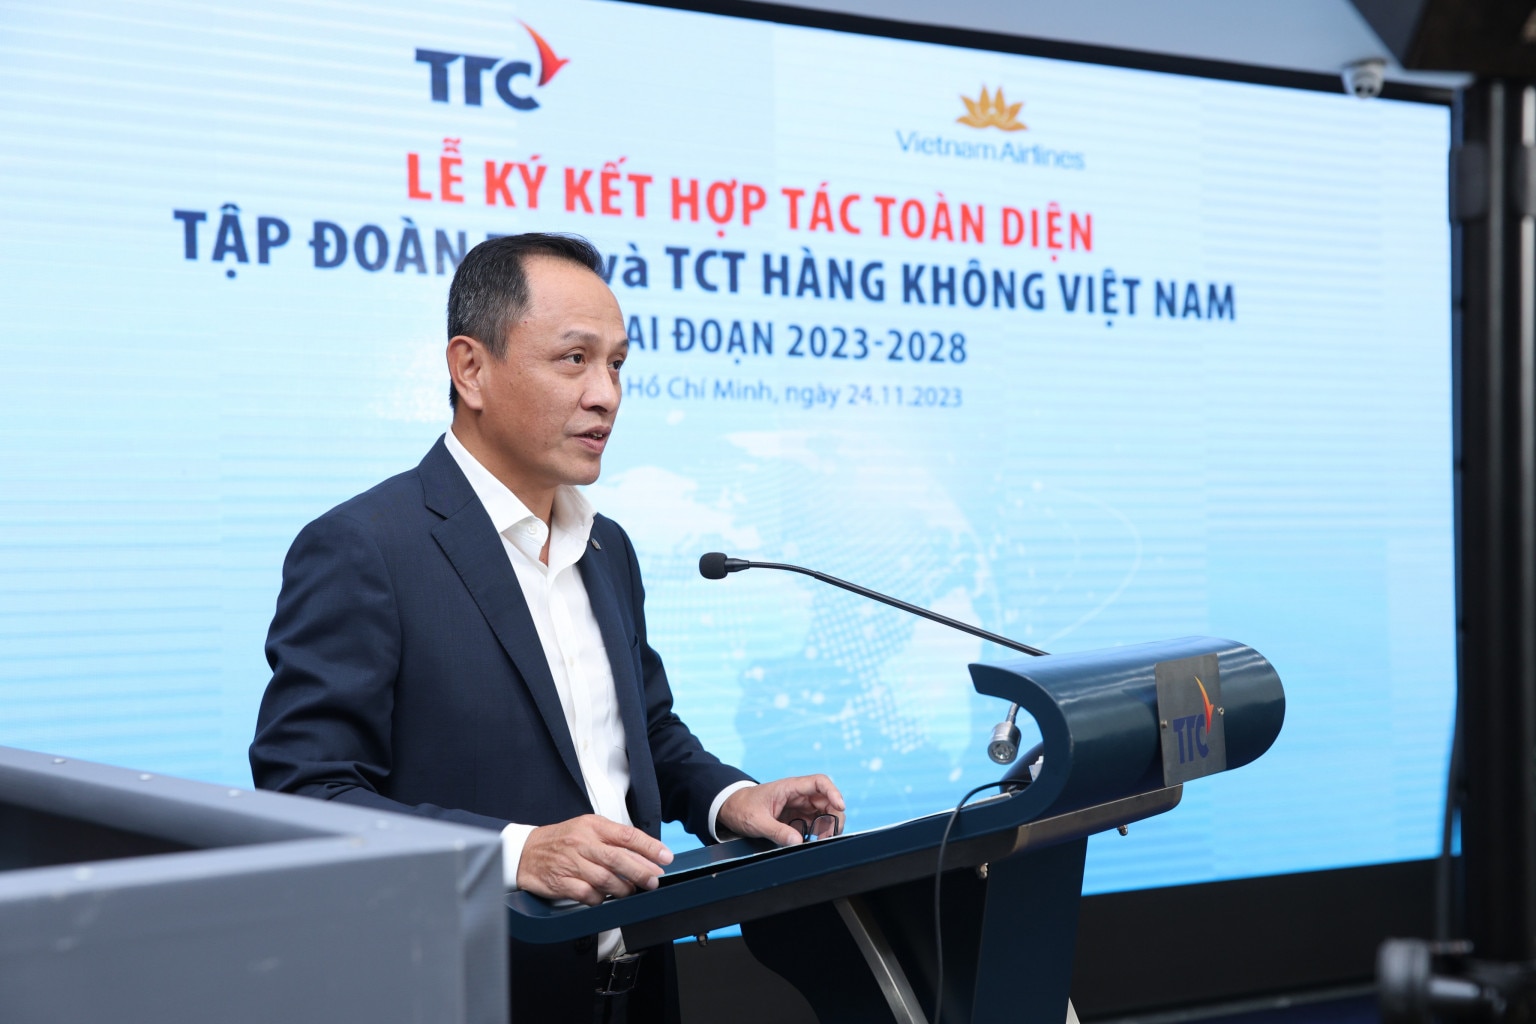 Sự kiện - Vietnam Airlines và Tập đoàn TTC ký kết hợp tác toàn diện (Hình 2).